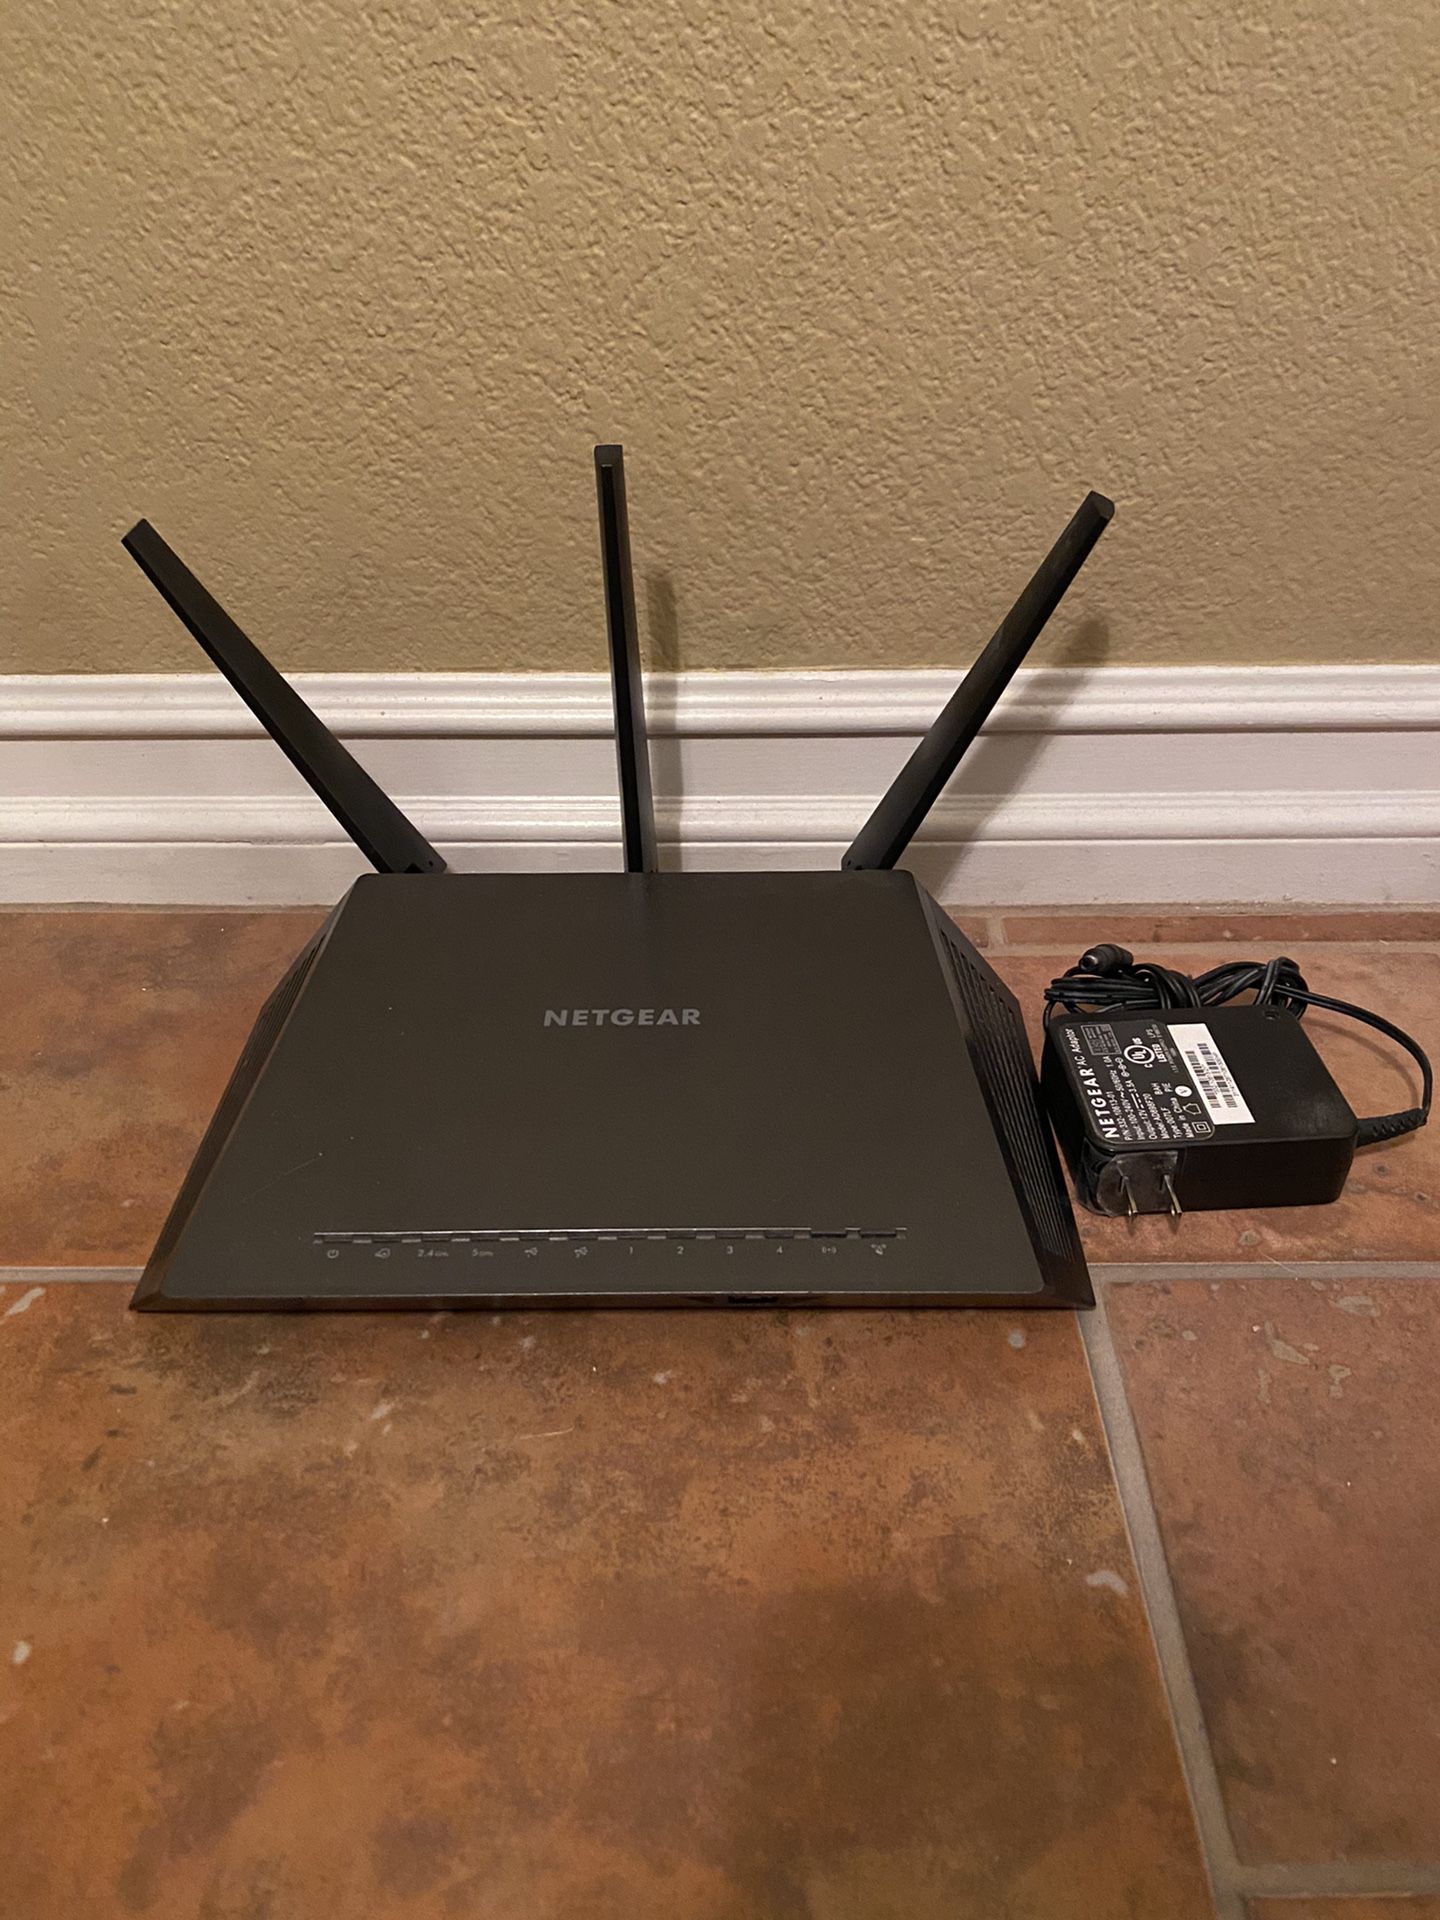 Smart WiFi Router Netgear Nighthawk